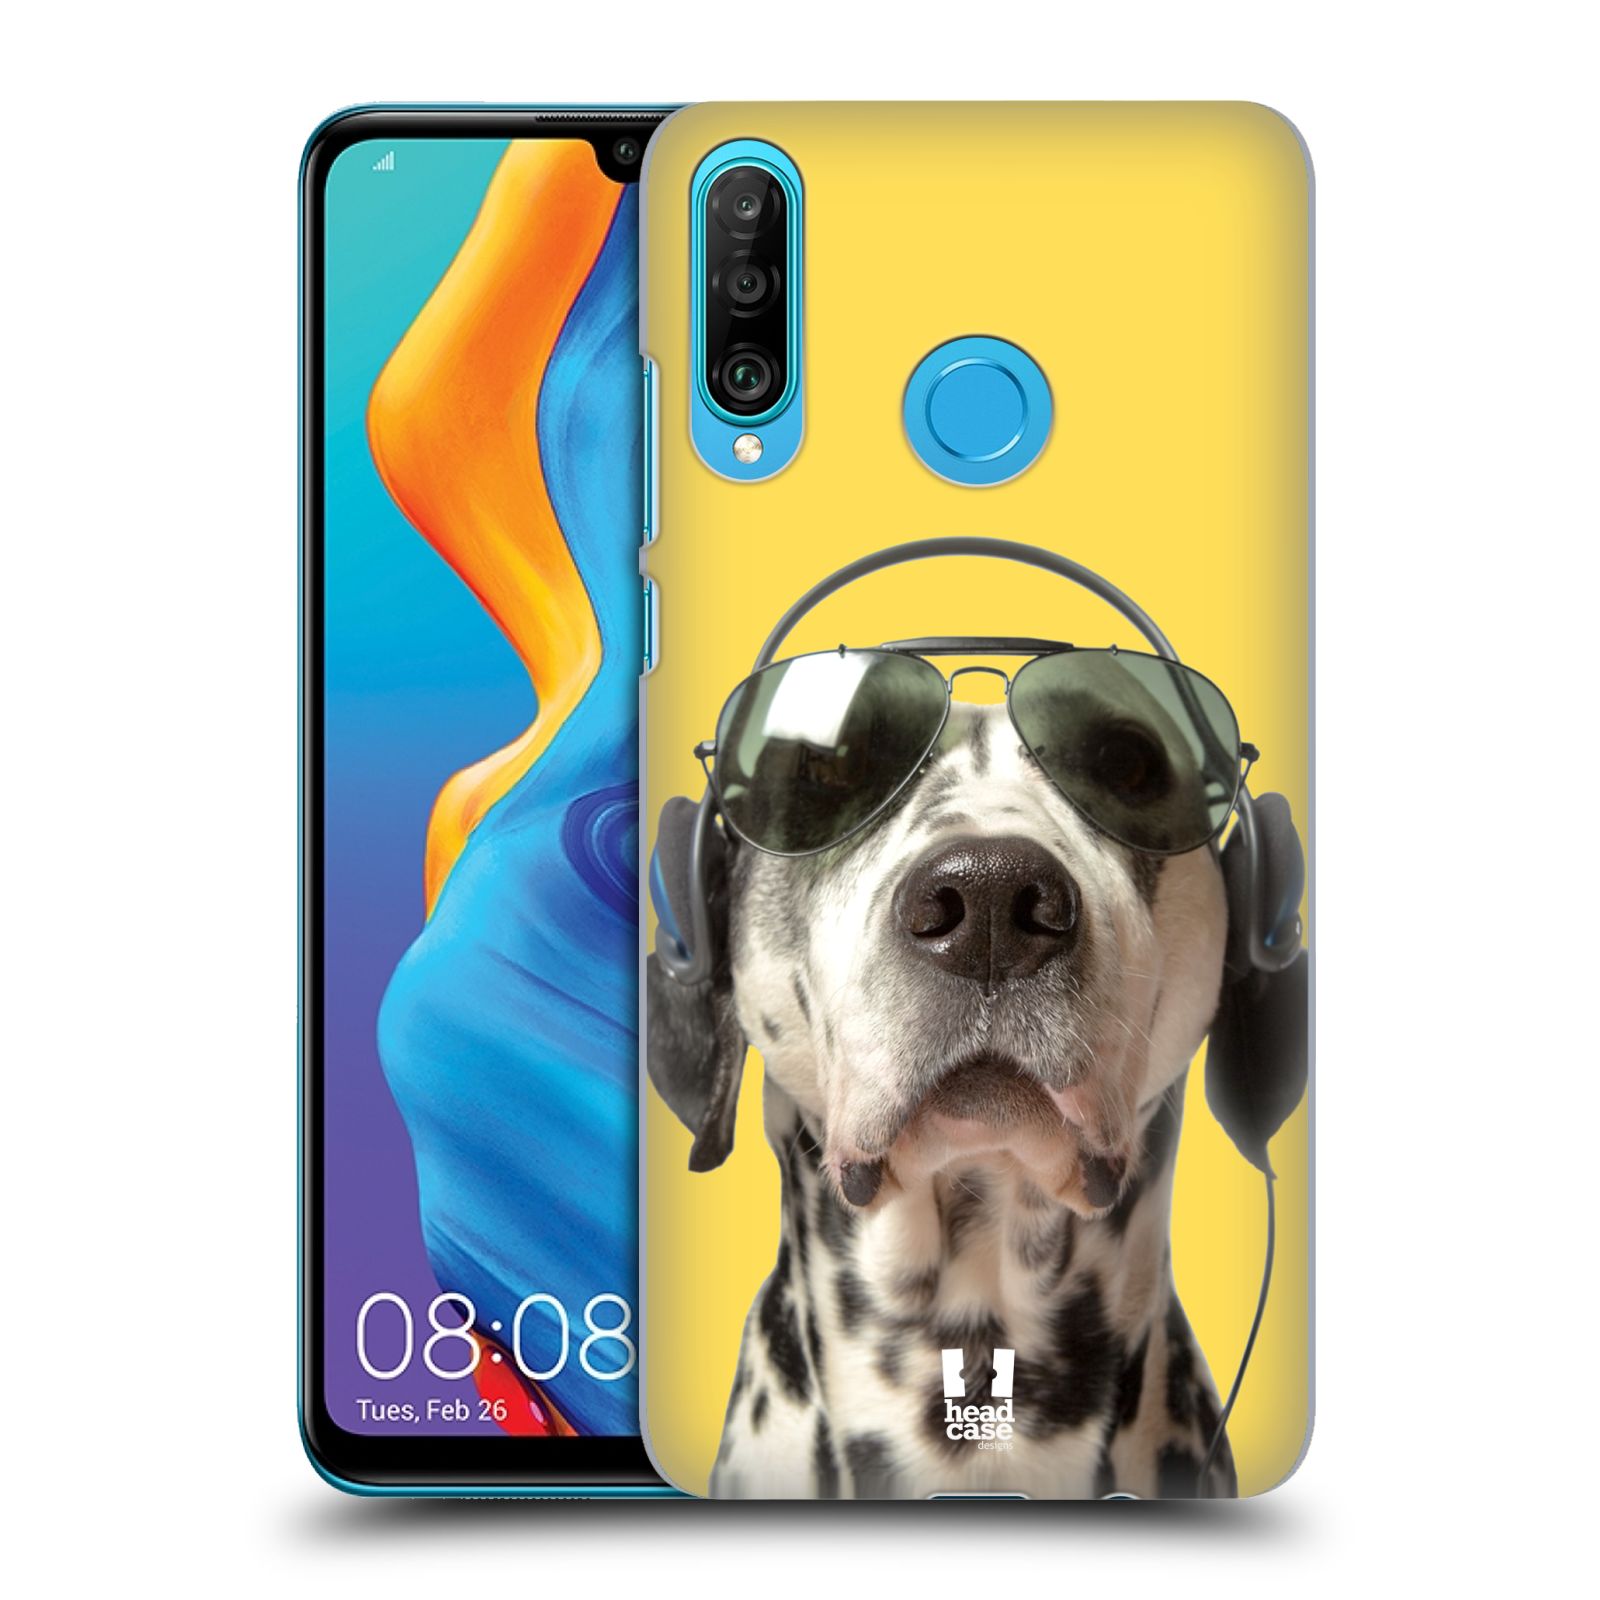 Pouzdro na mobil Huawei P30 LITE - HEAD CASE - vzor Legrační zvířátka dalmatin se sluchátky žlutá